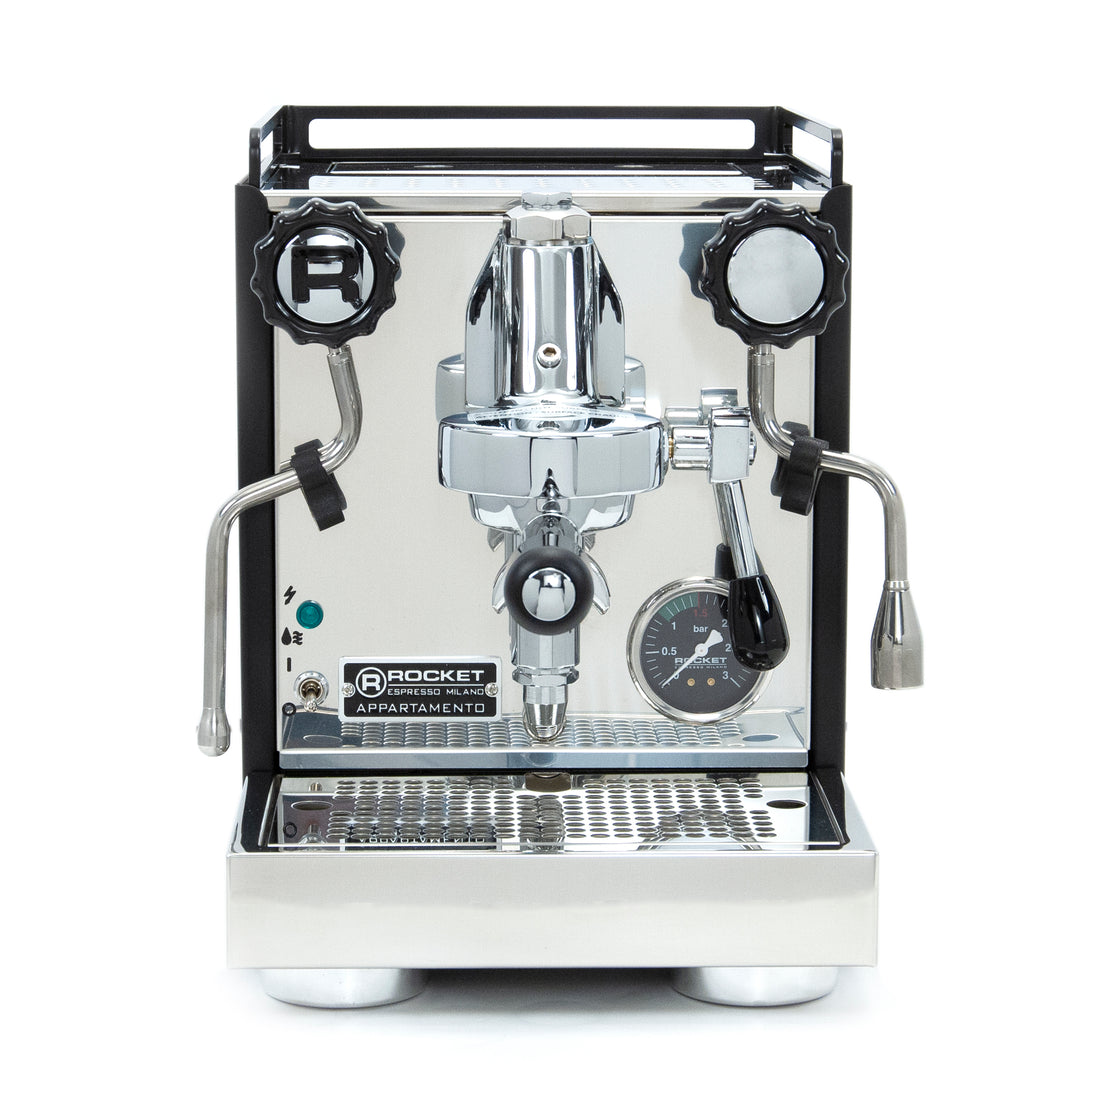 Rocket Espresso Appartamento Serie Nera Espresso Machine - Ebony Macassar